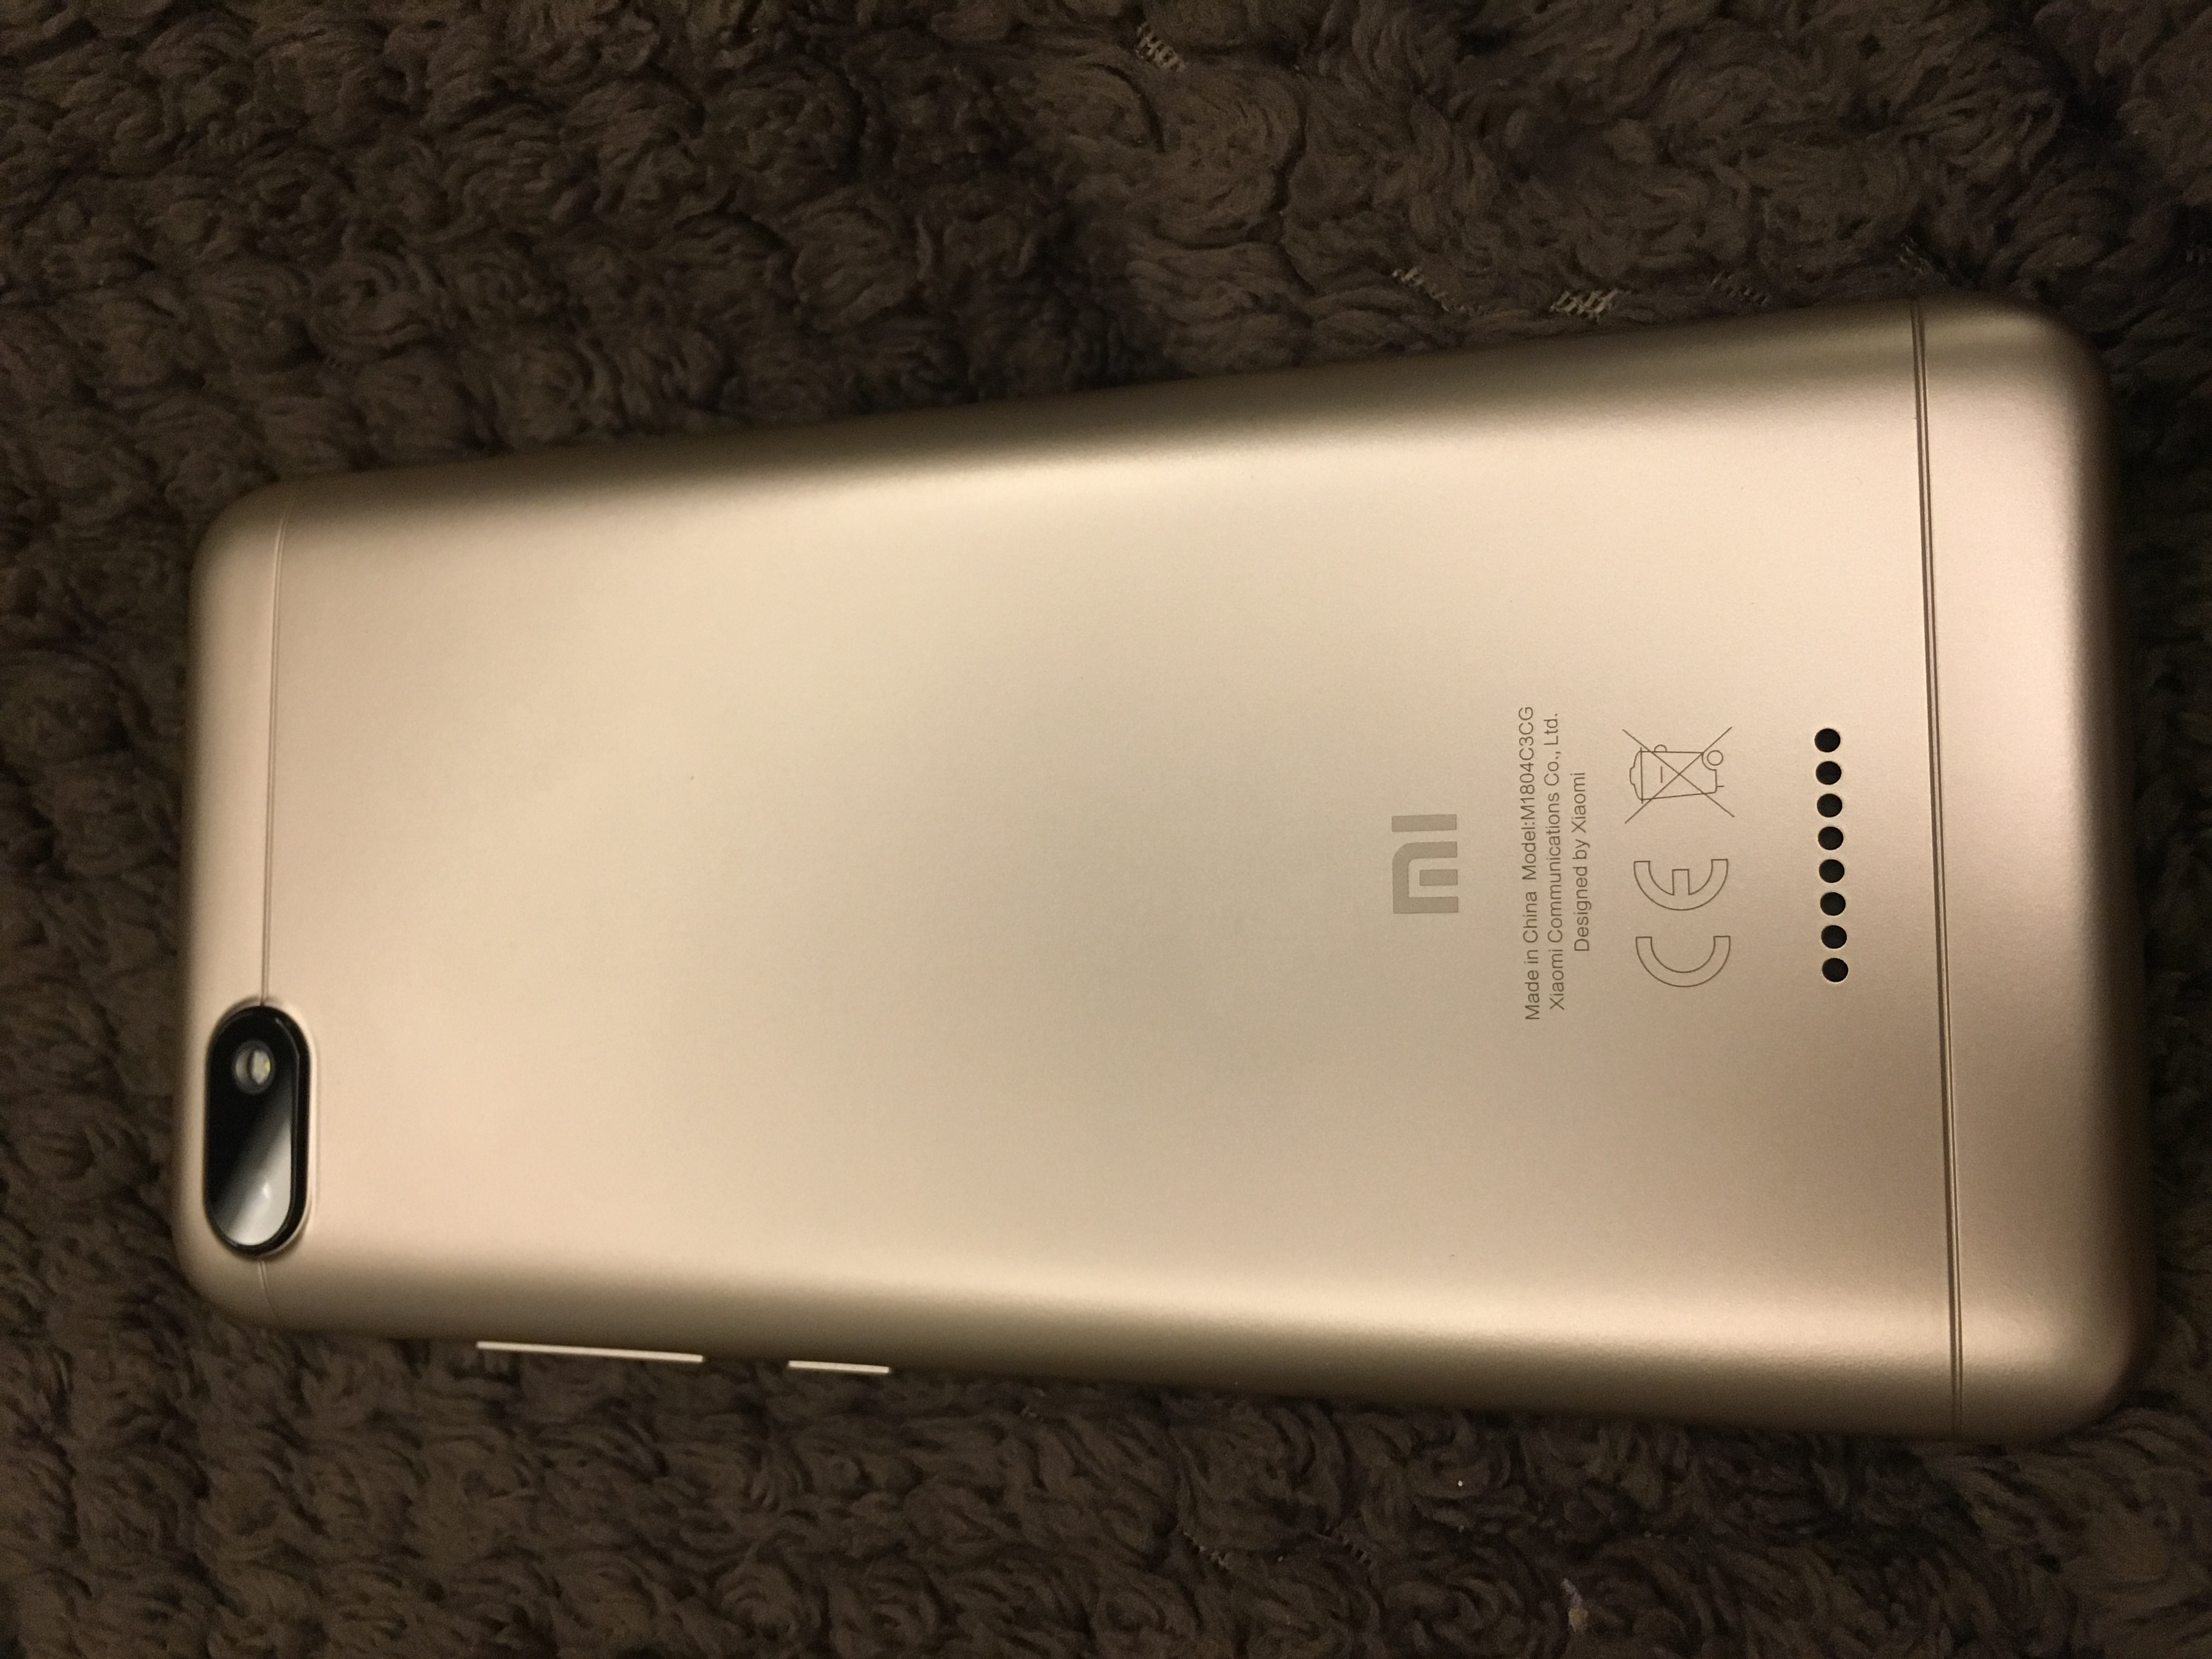 Телефон Xiaomi Communications